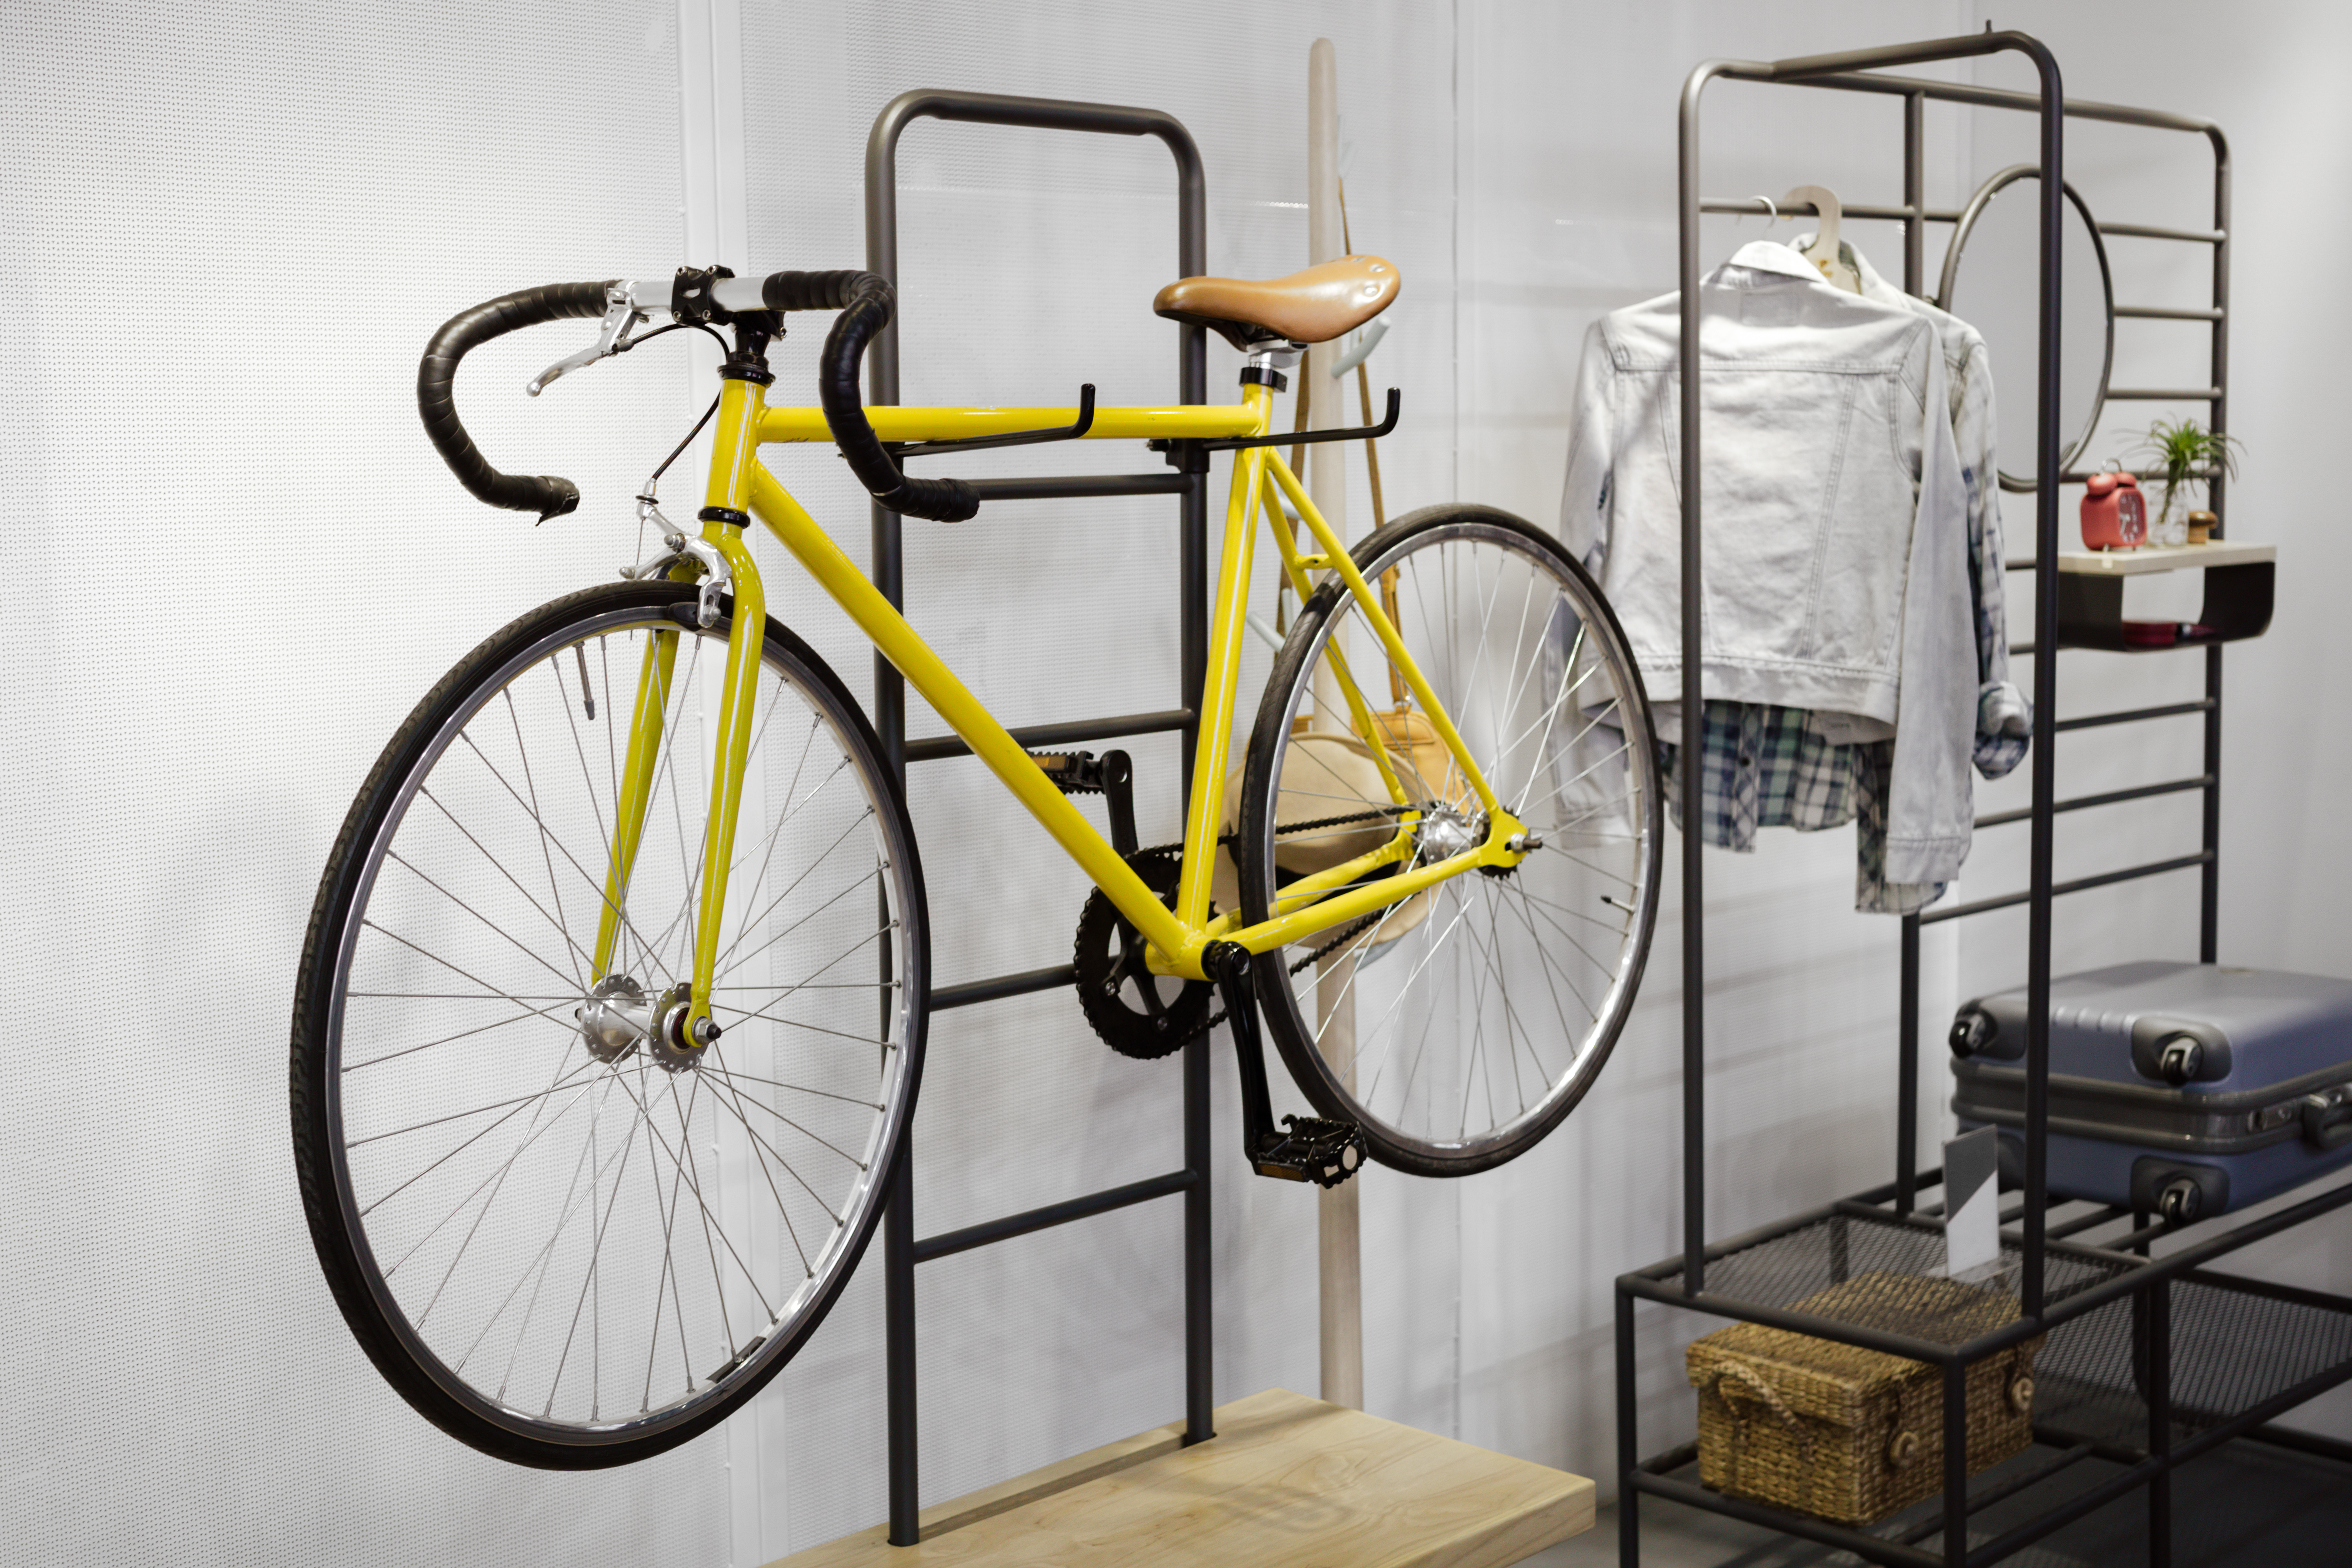 15 Best Garage Bike Storage Ideas To, Storing Electric Bikes In Garage